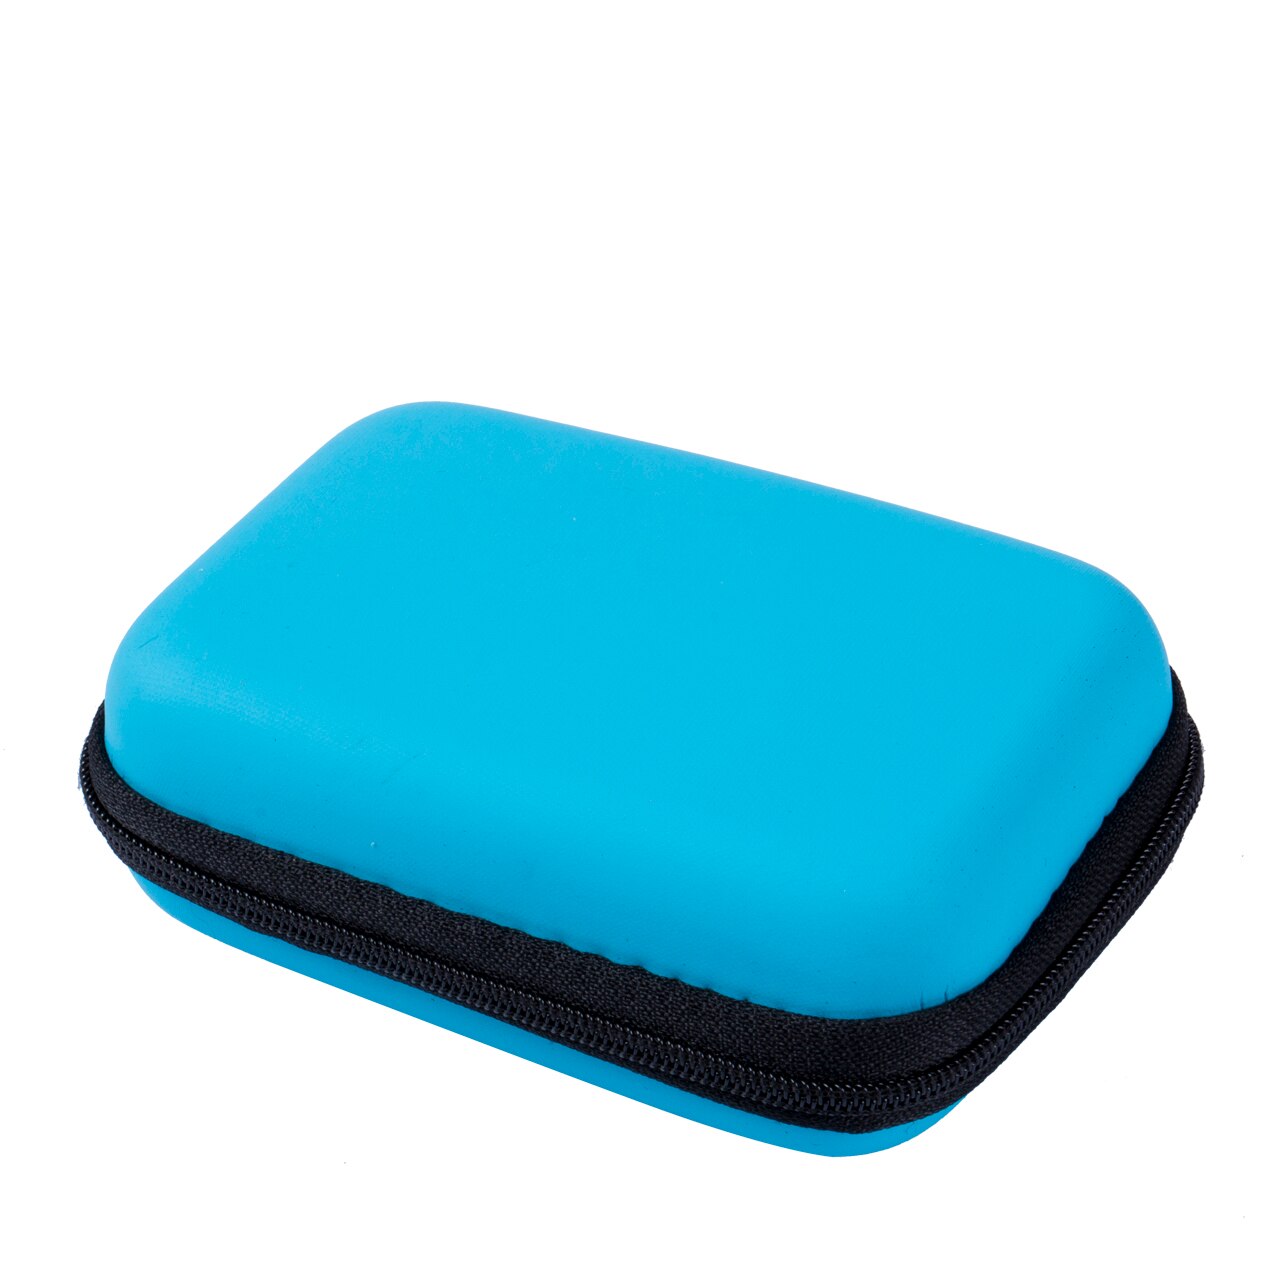 Bærbart rejsehovedtelefon øretelefon øretelefon kabel opbevaringspose taske hårdt etui indsæt flashdrev: Himmelblå